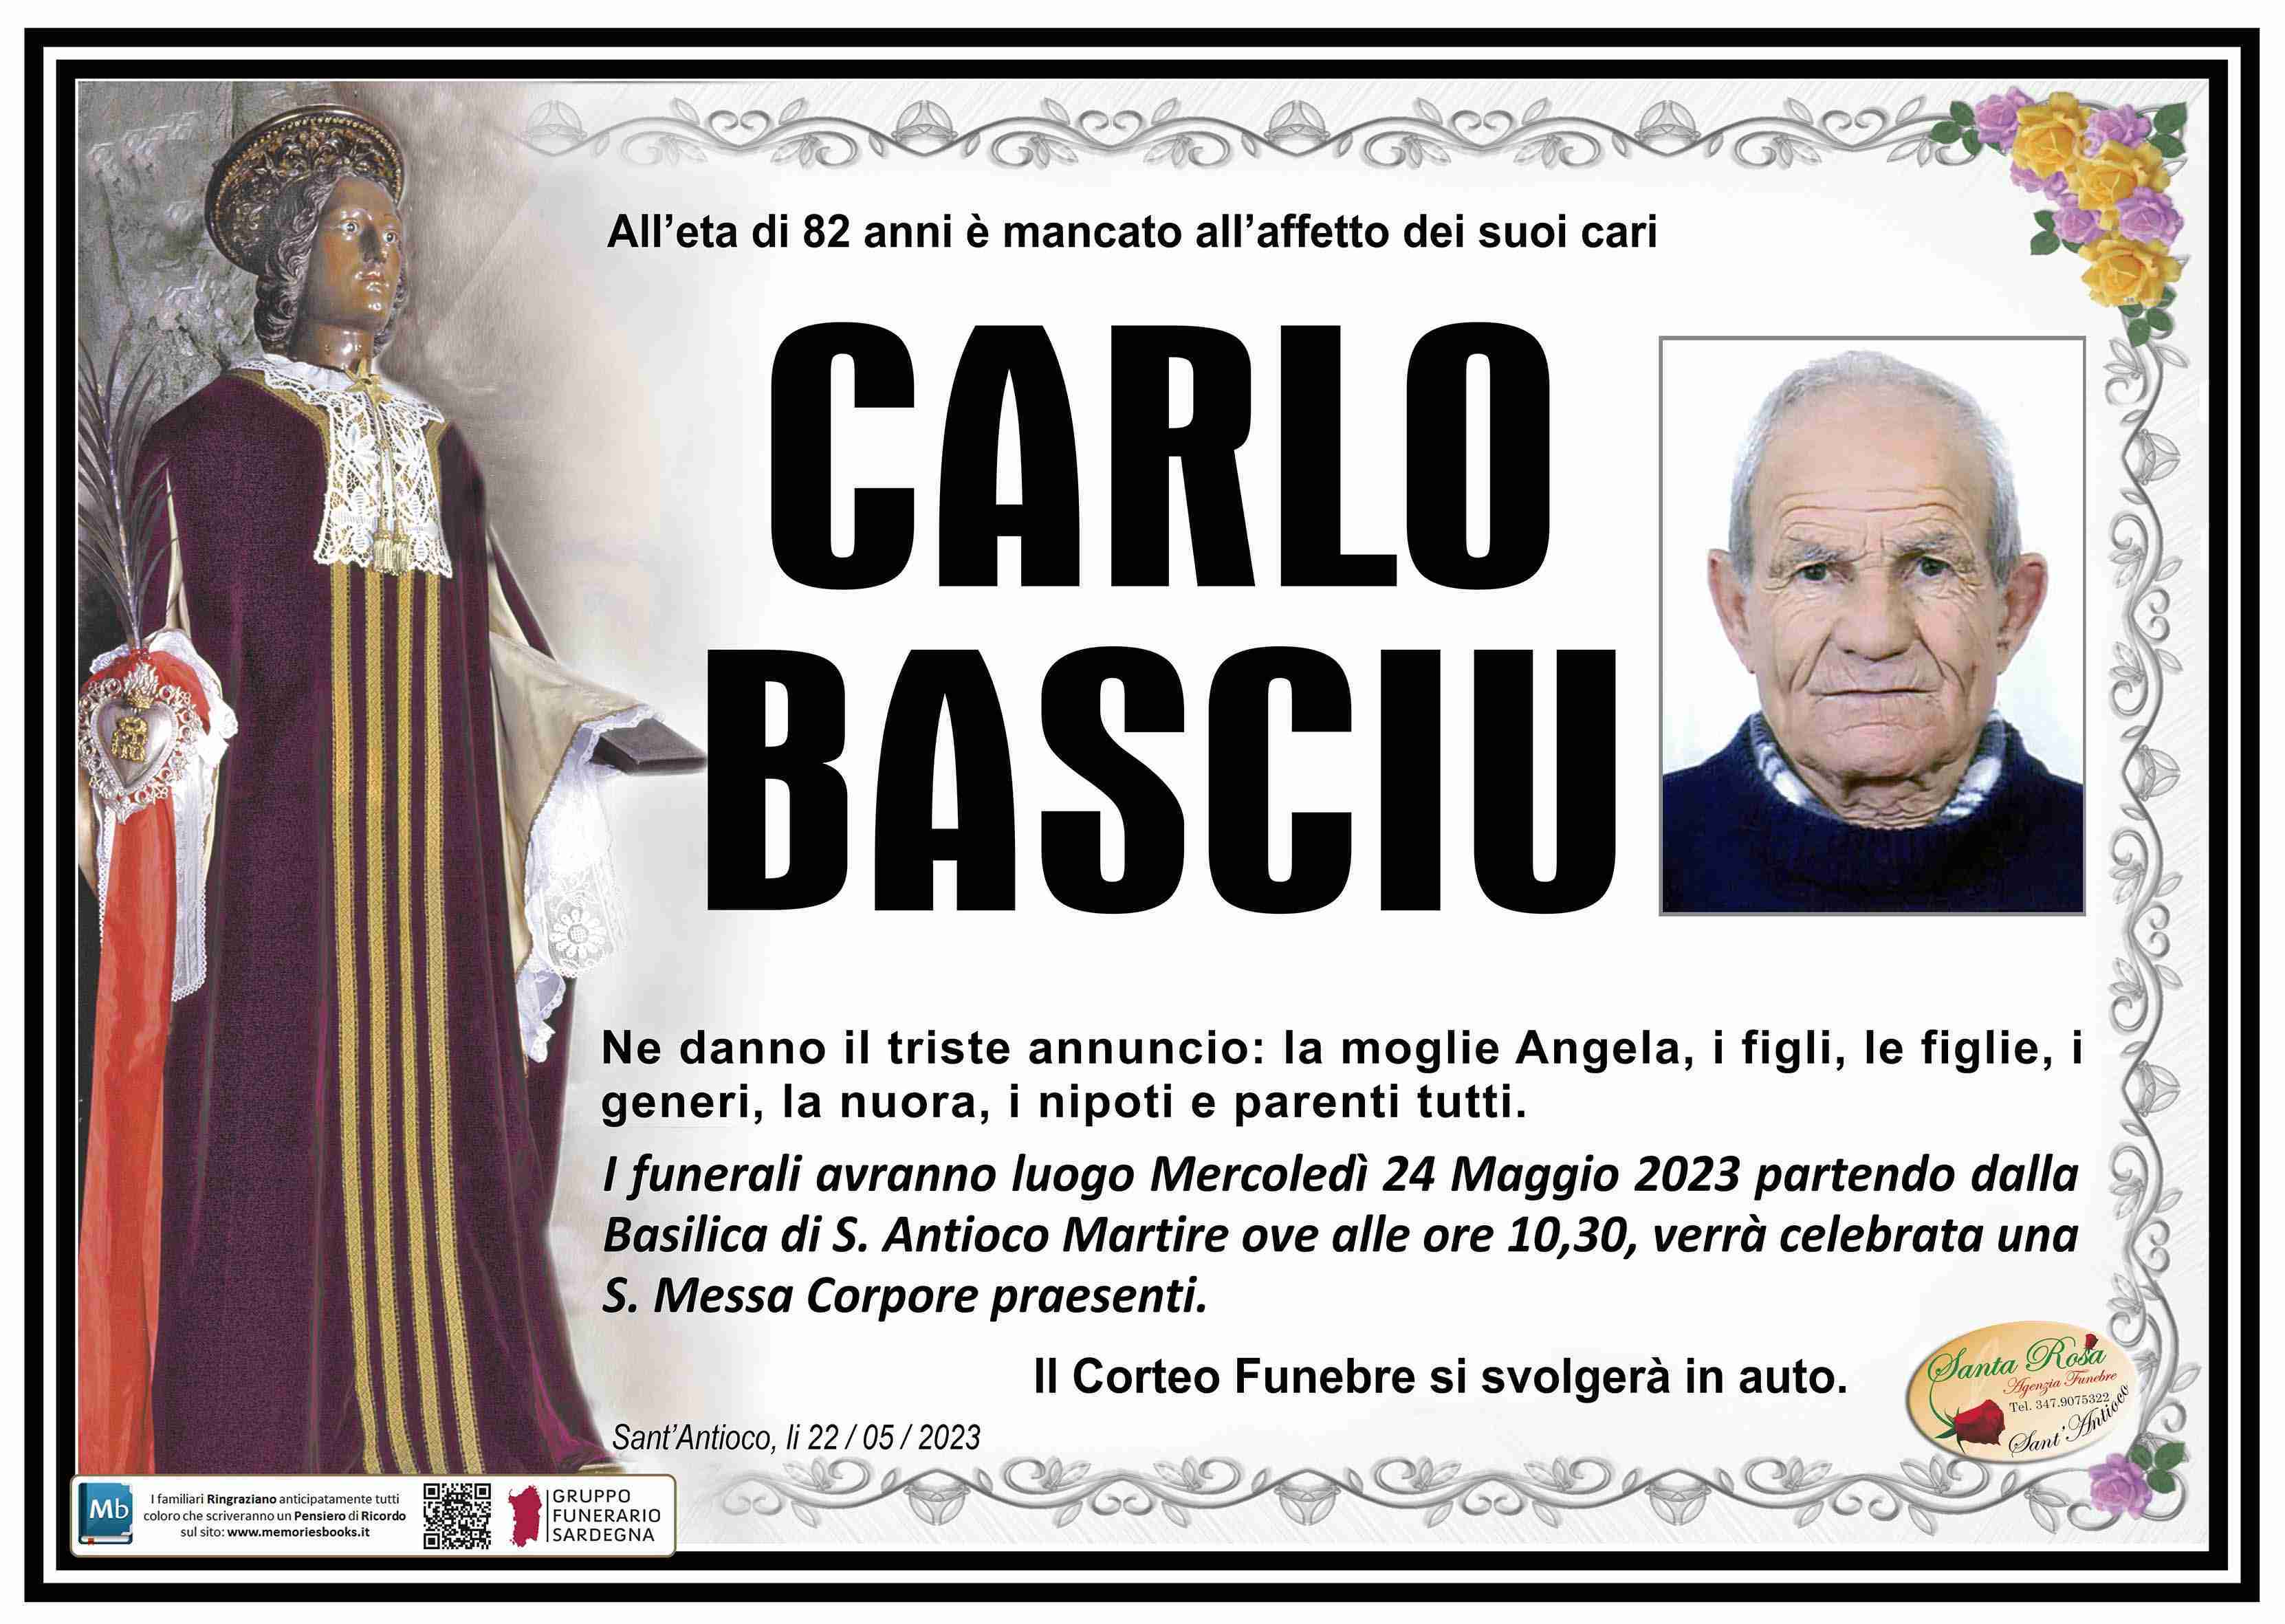 Carlo Basciu